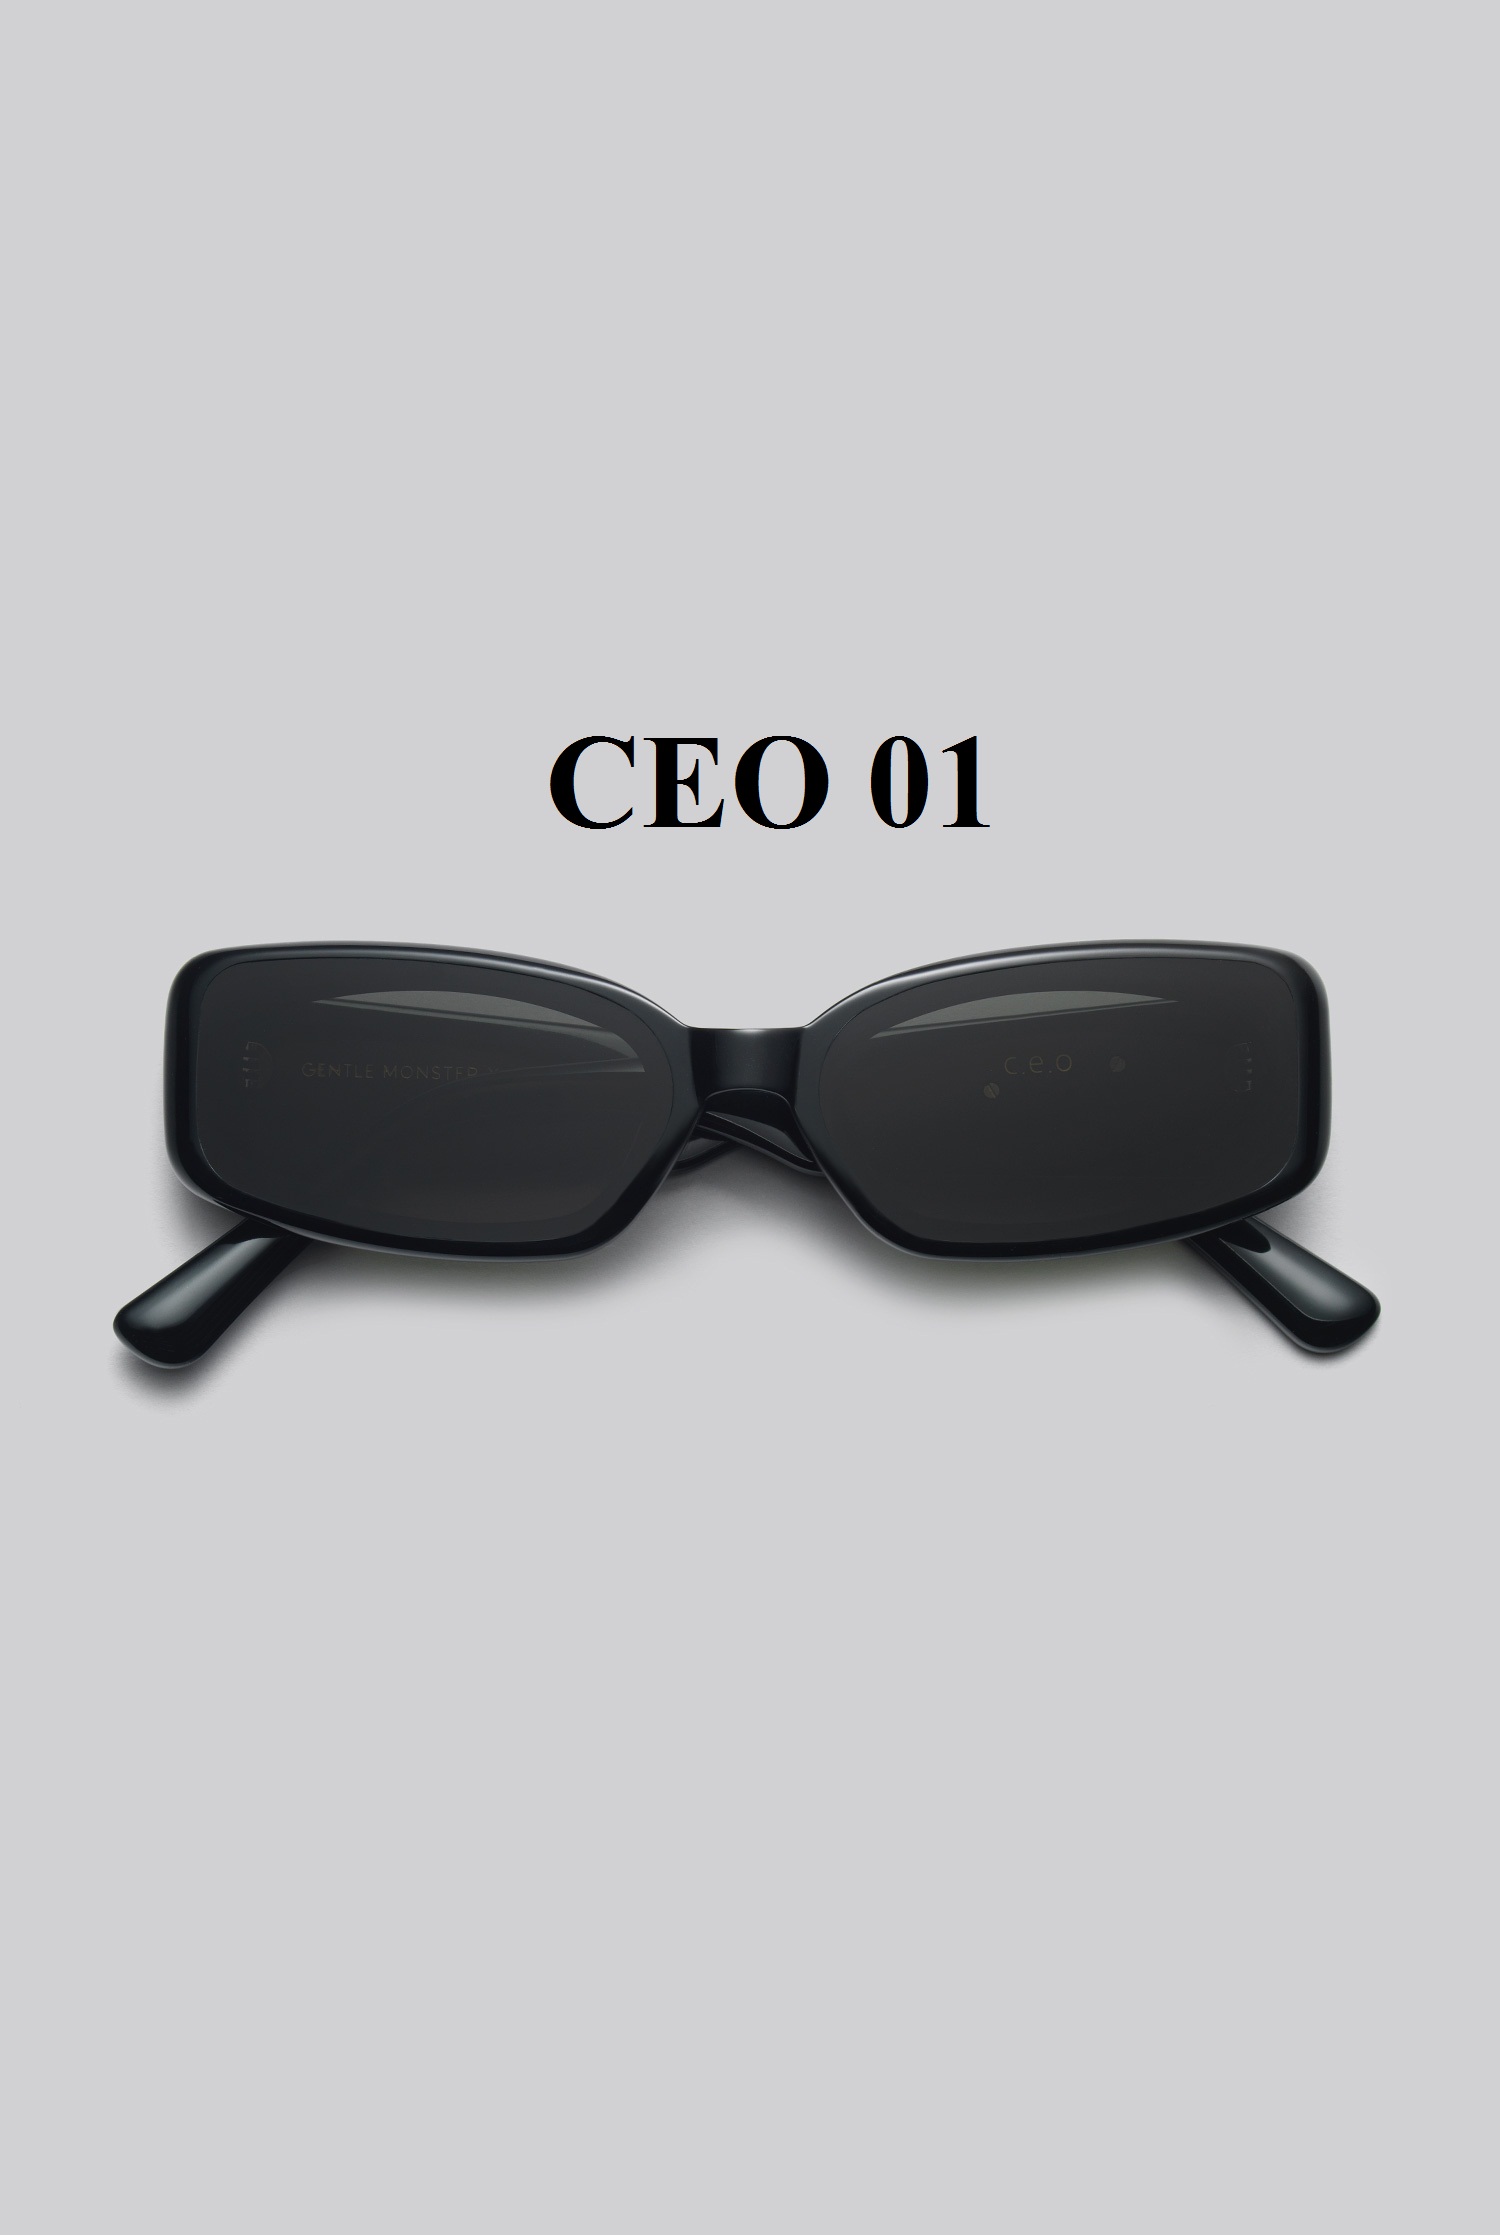 CEO 01